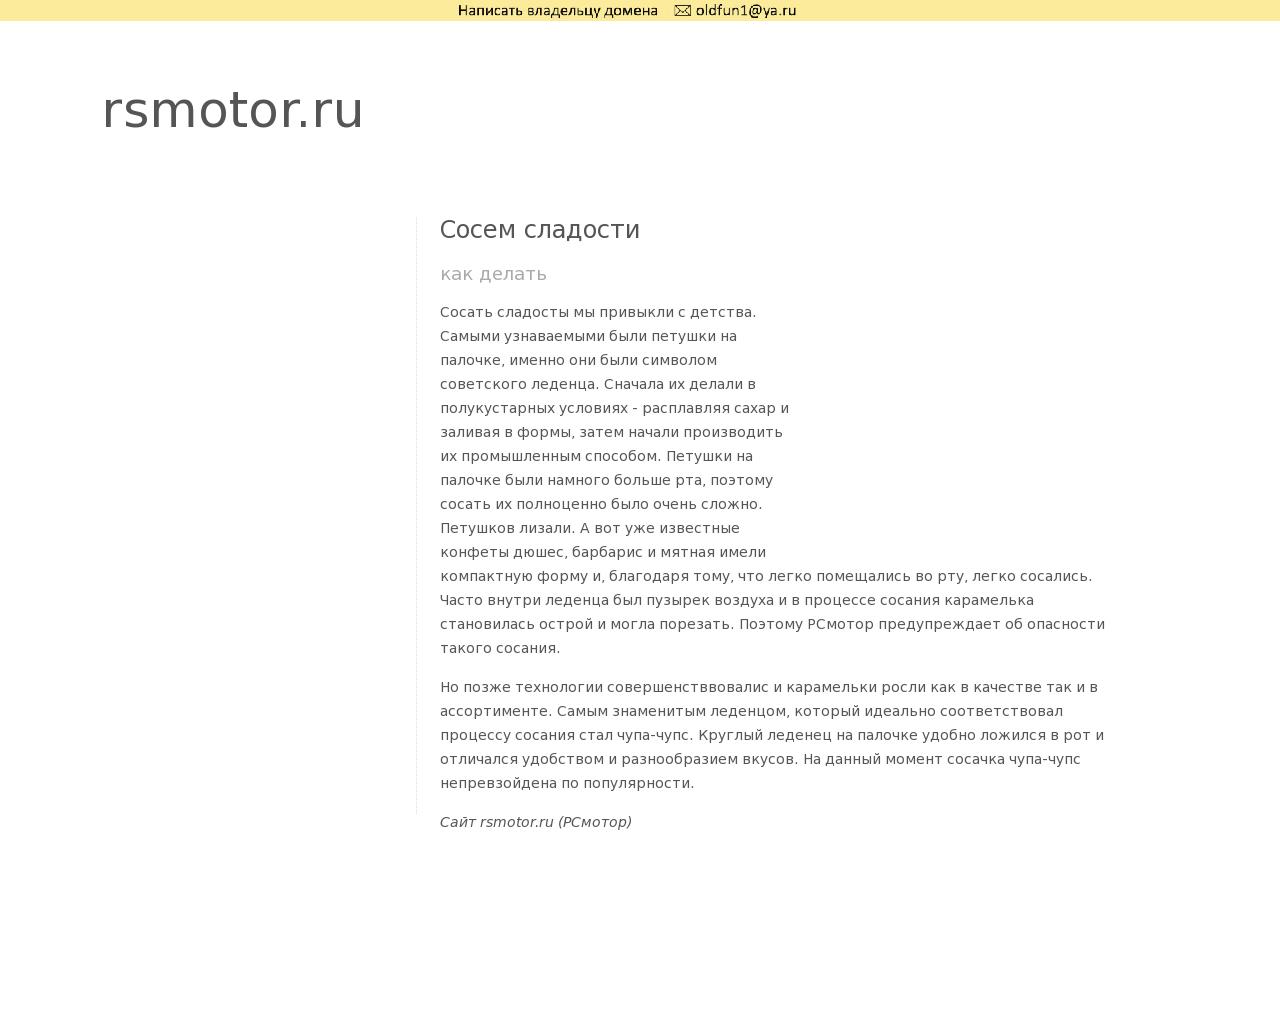 Изображение сайта rsmotor.ru в разрешении 1280x1024